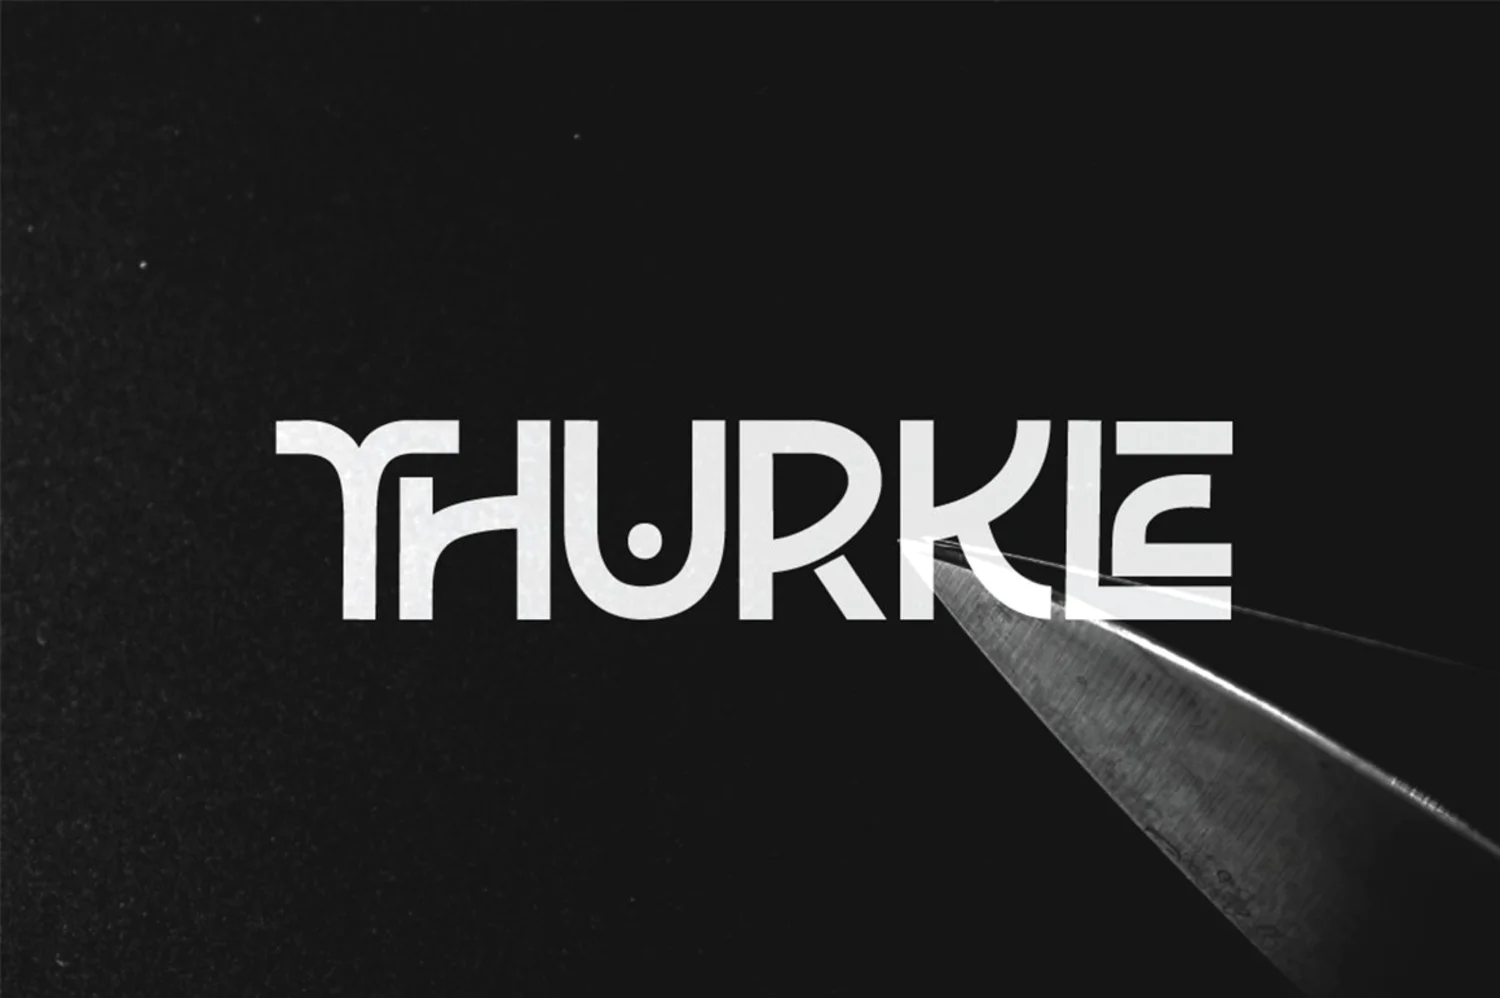 3635 创意硬朗标题英文新衬线字体下载 Thurkle Font